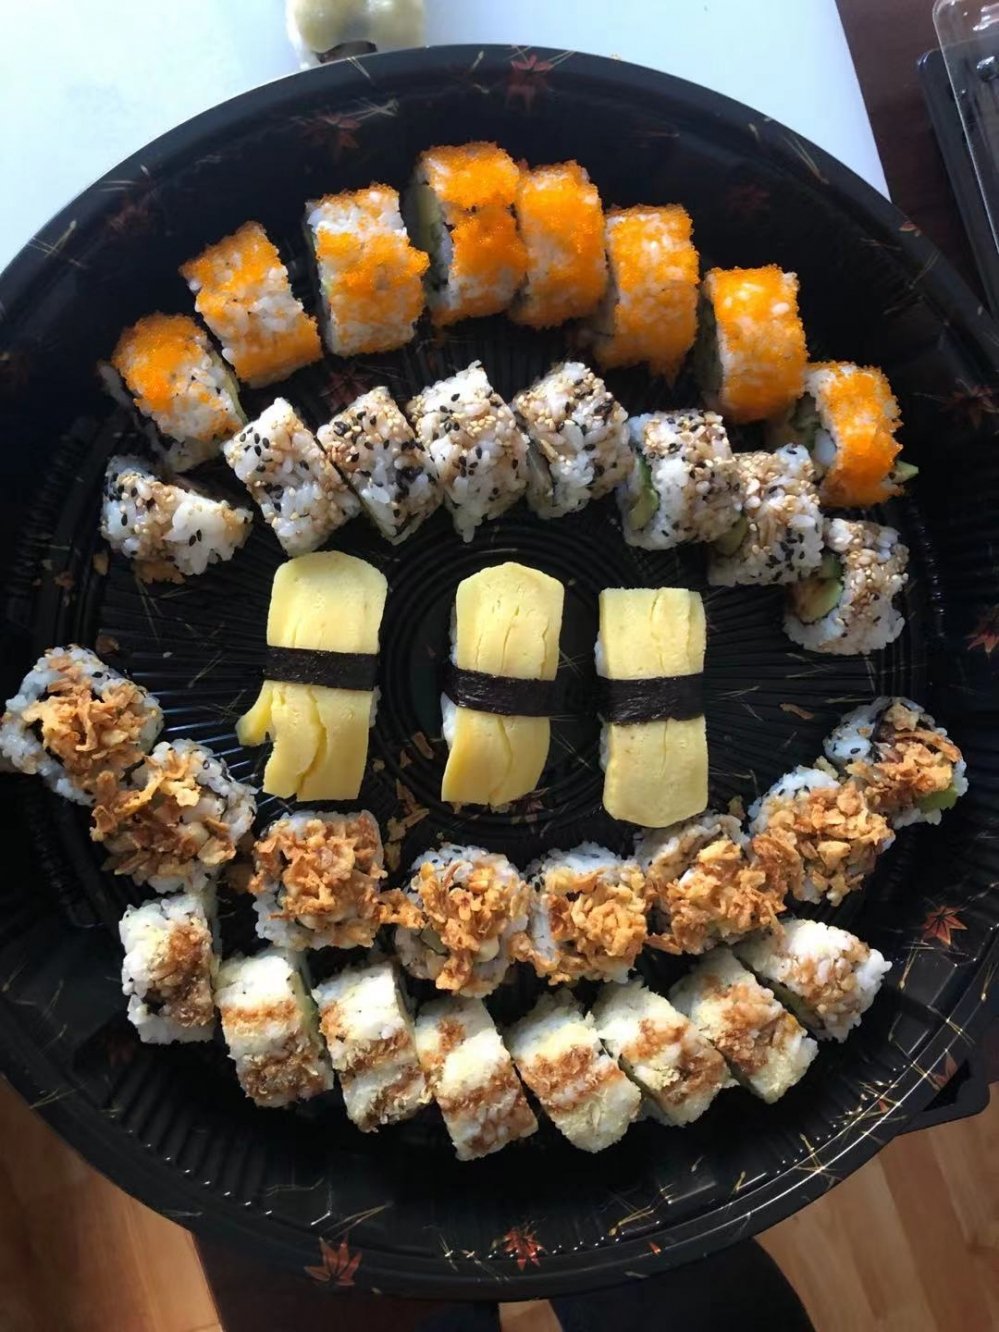 Sushi 4